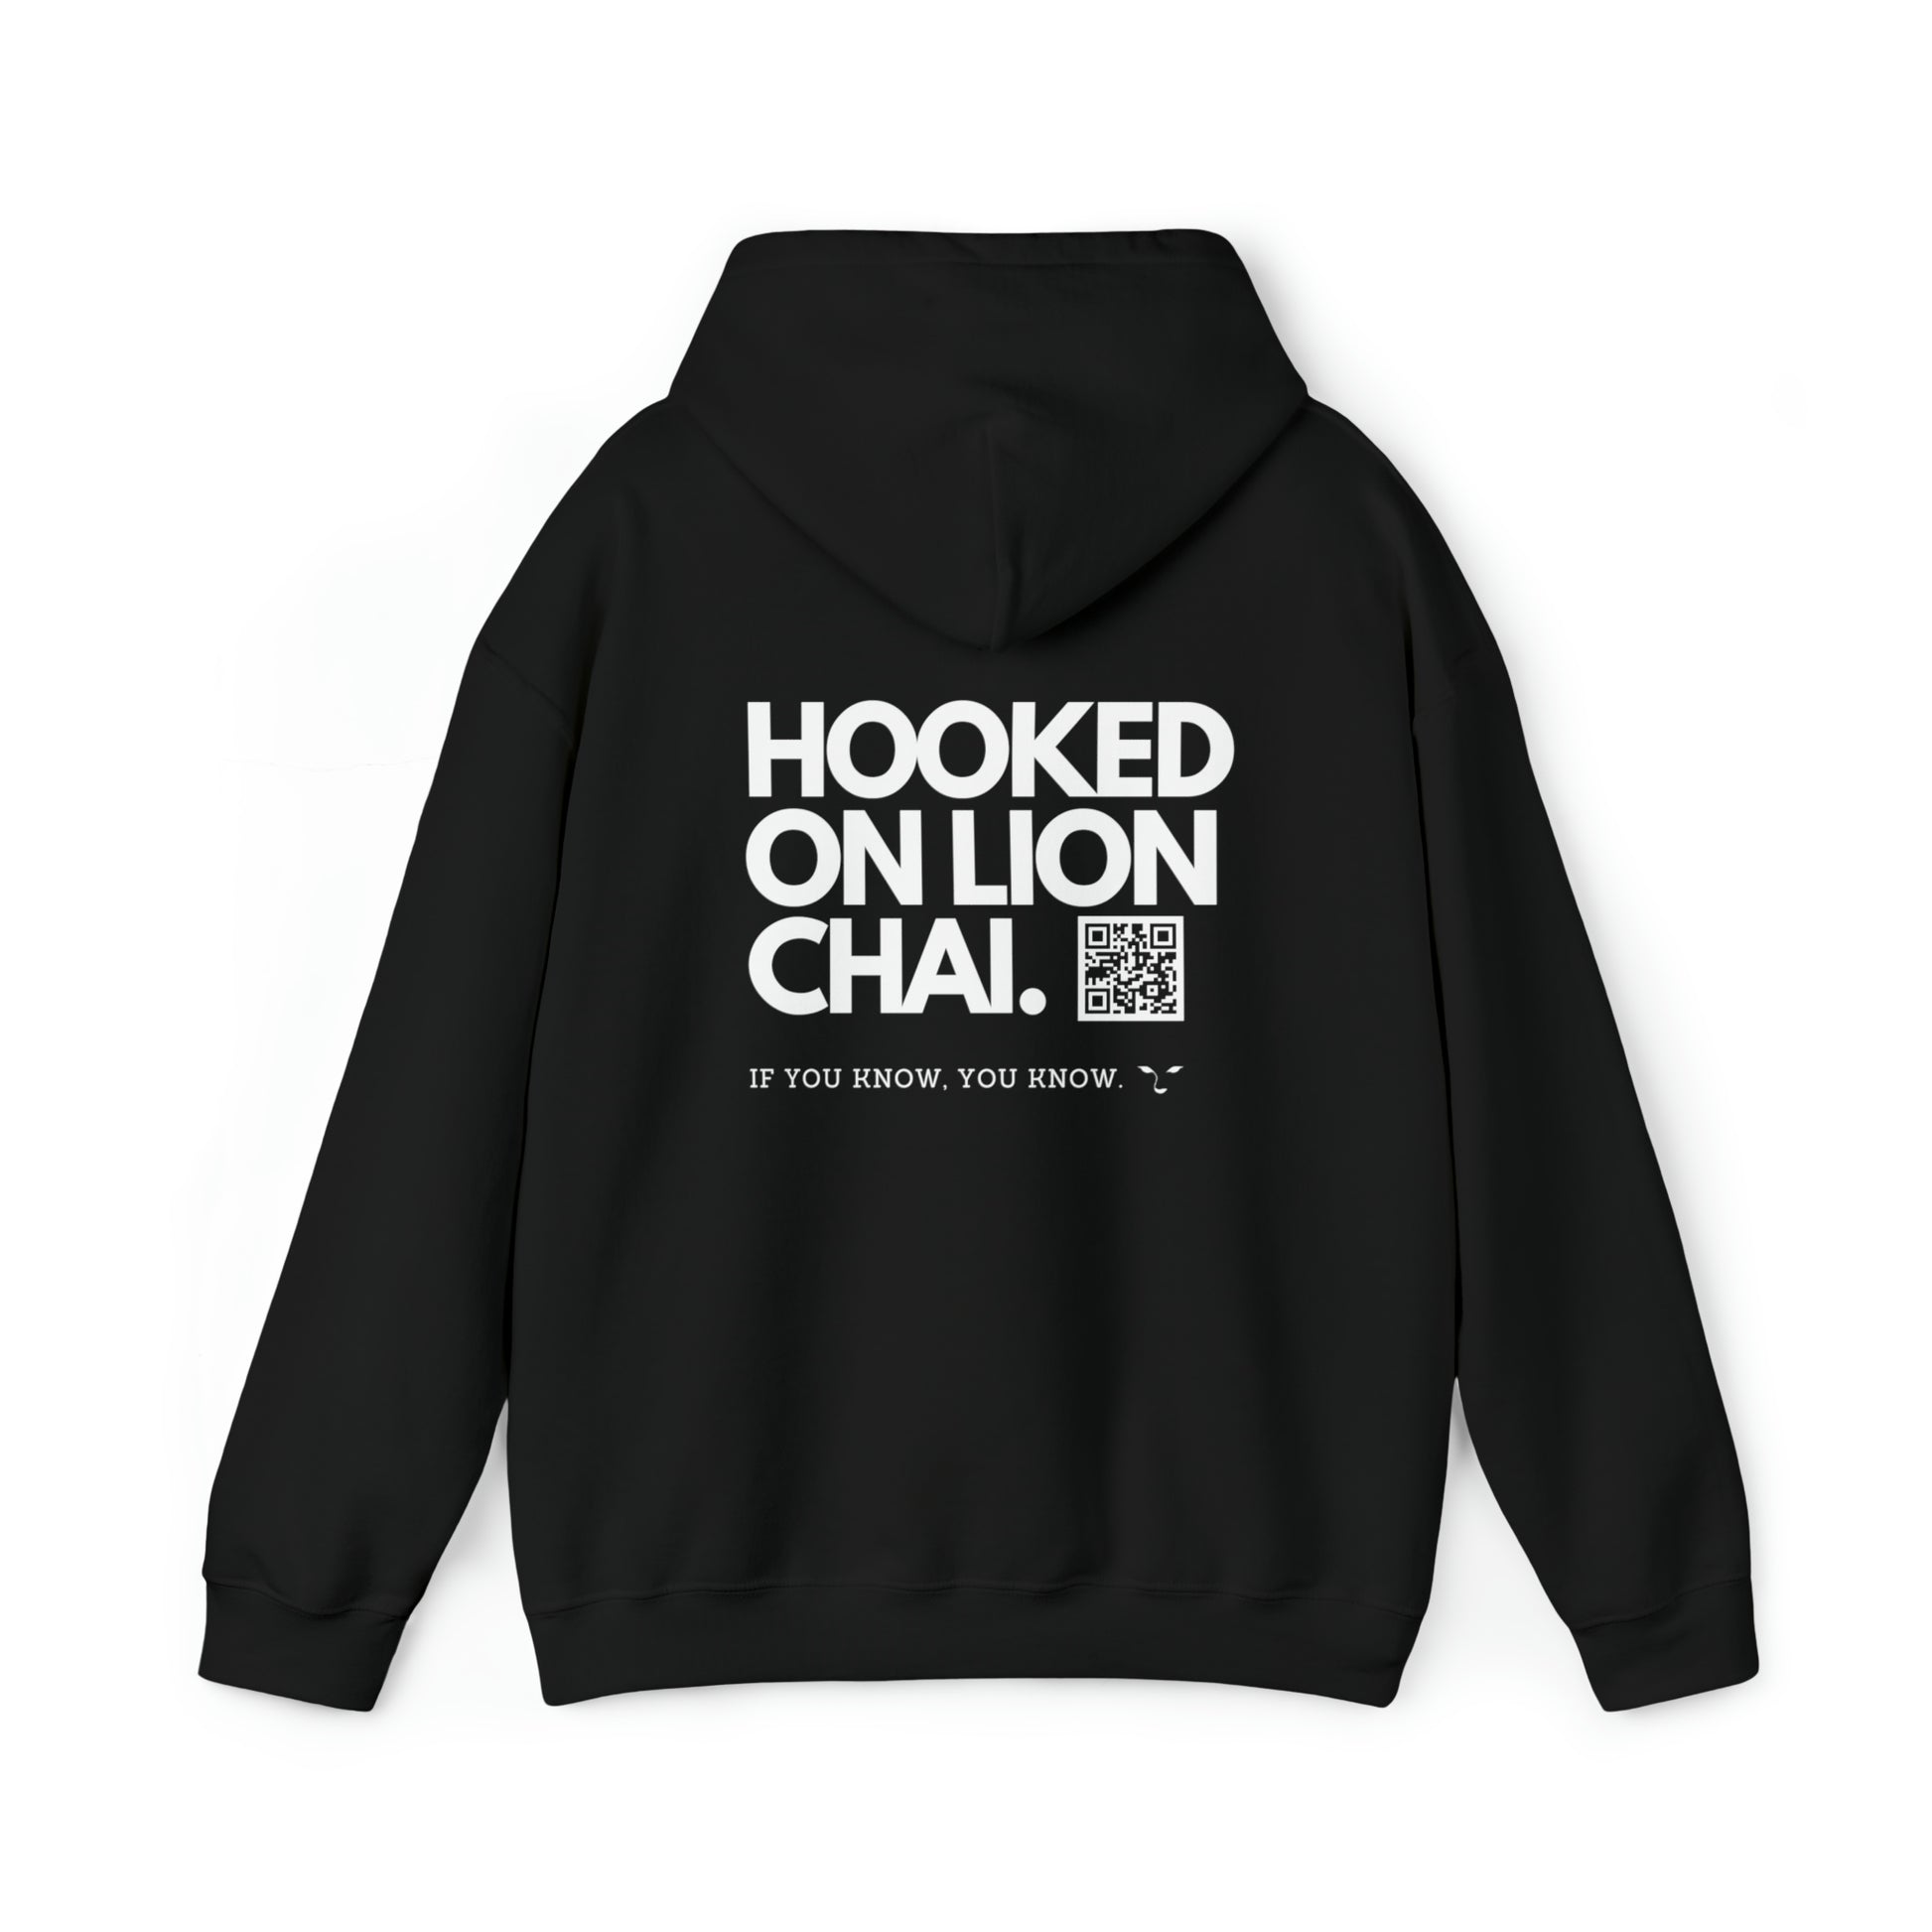 Chai Couture - Unisex Heavy Blend™ Hooded Sweatshirt - Black - Daniel's Chai Bar